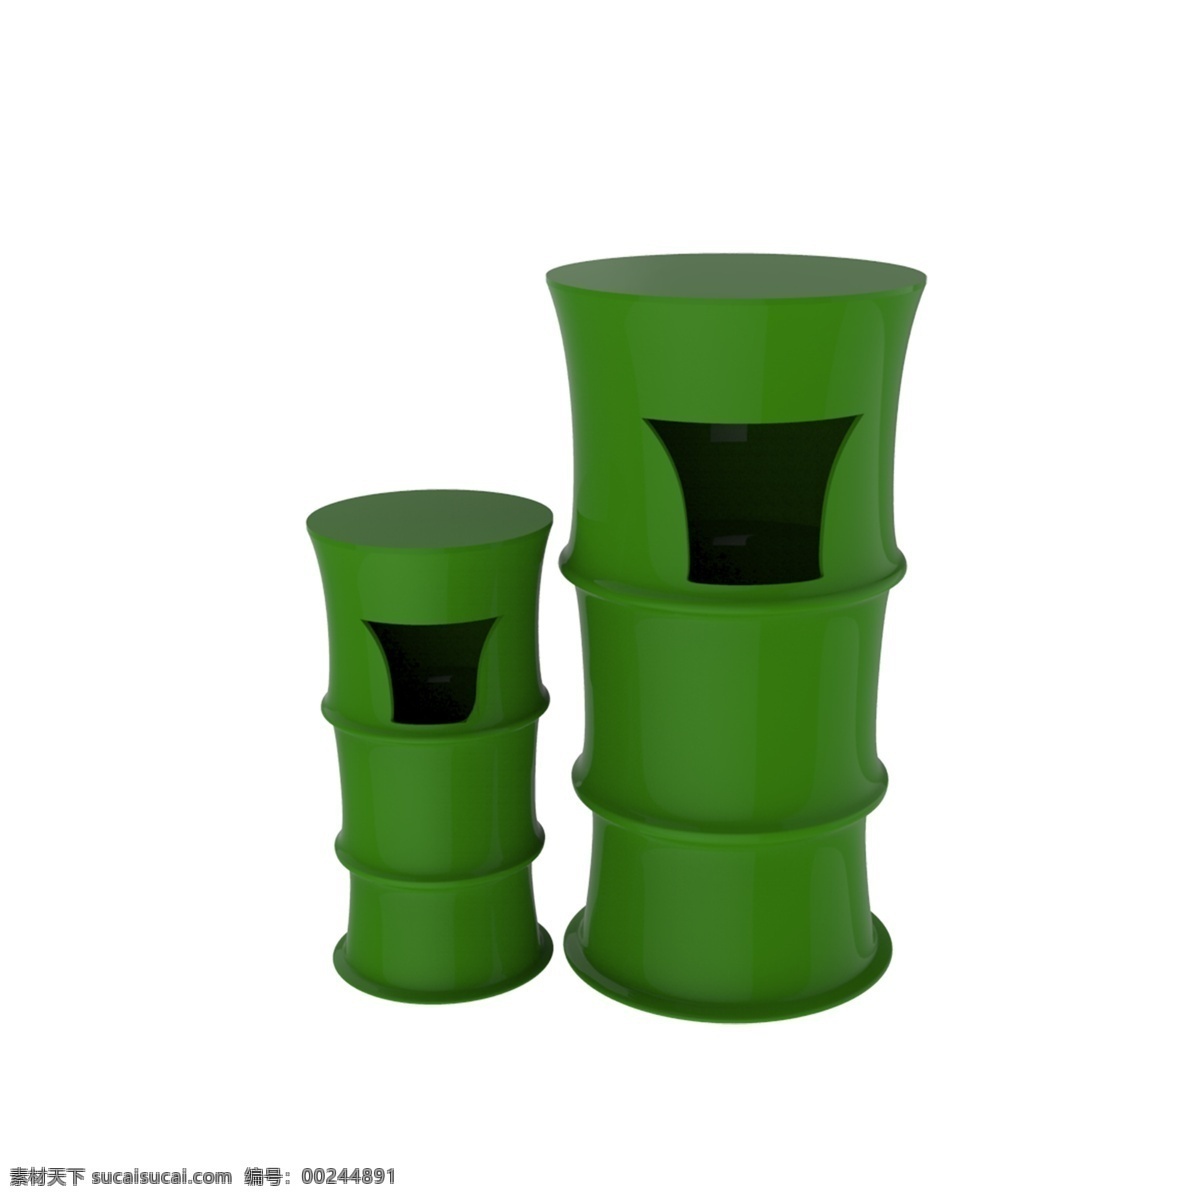 仿真垃圾桶 竹子造型 垃圾桶 绿色垃圾桶 垃圾分类 室外垃圾桶